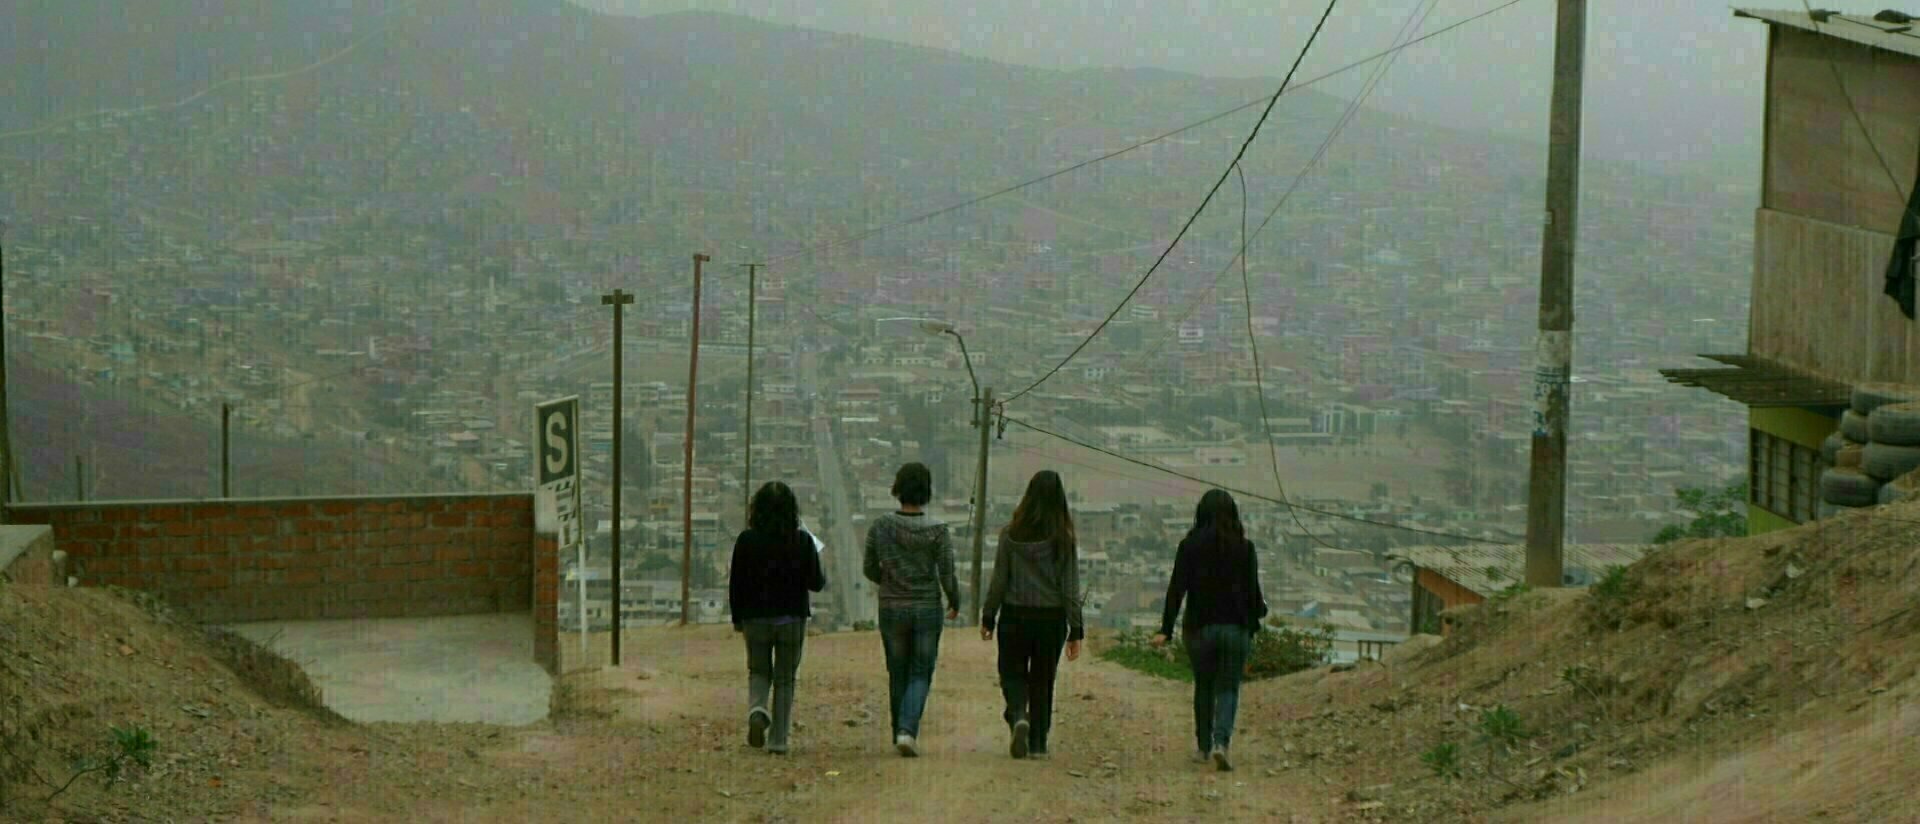 Perù - periferia di Lima 